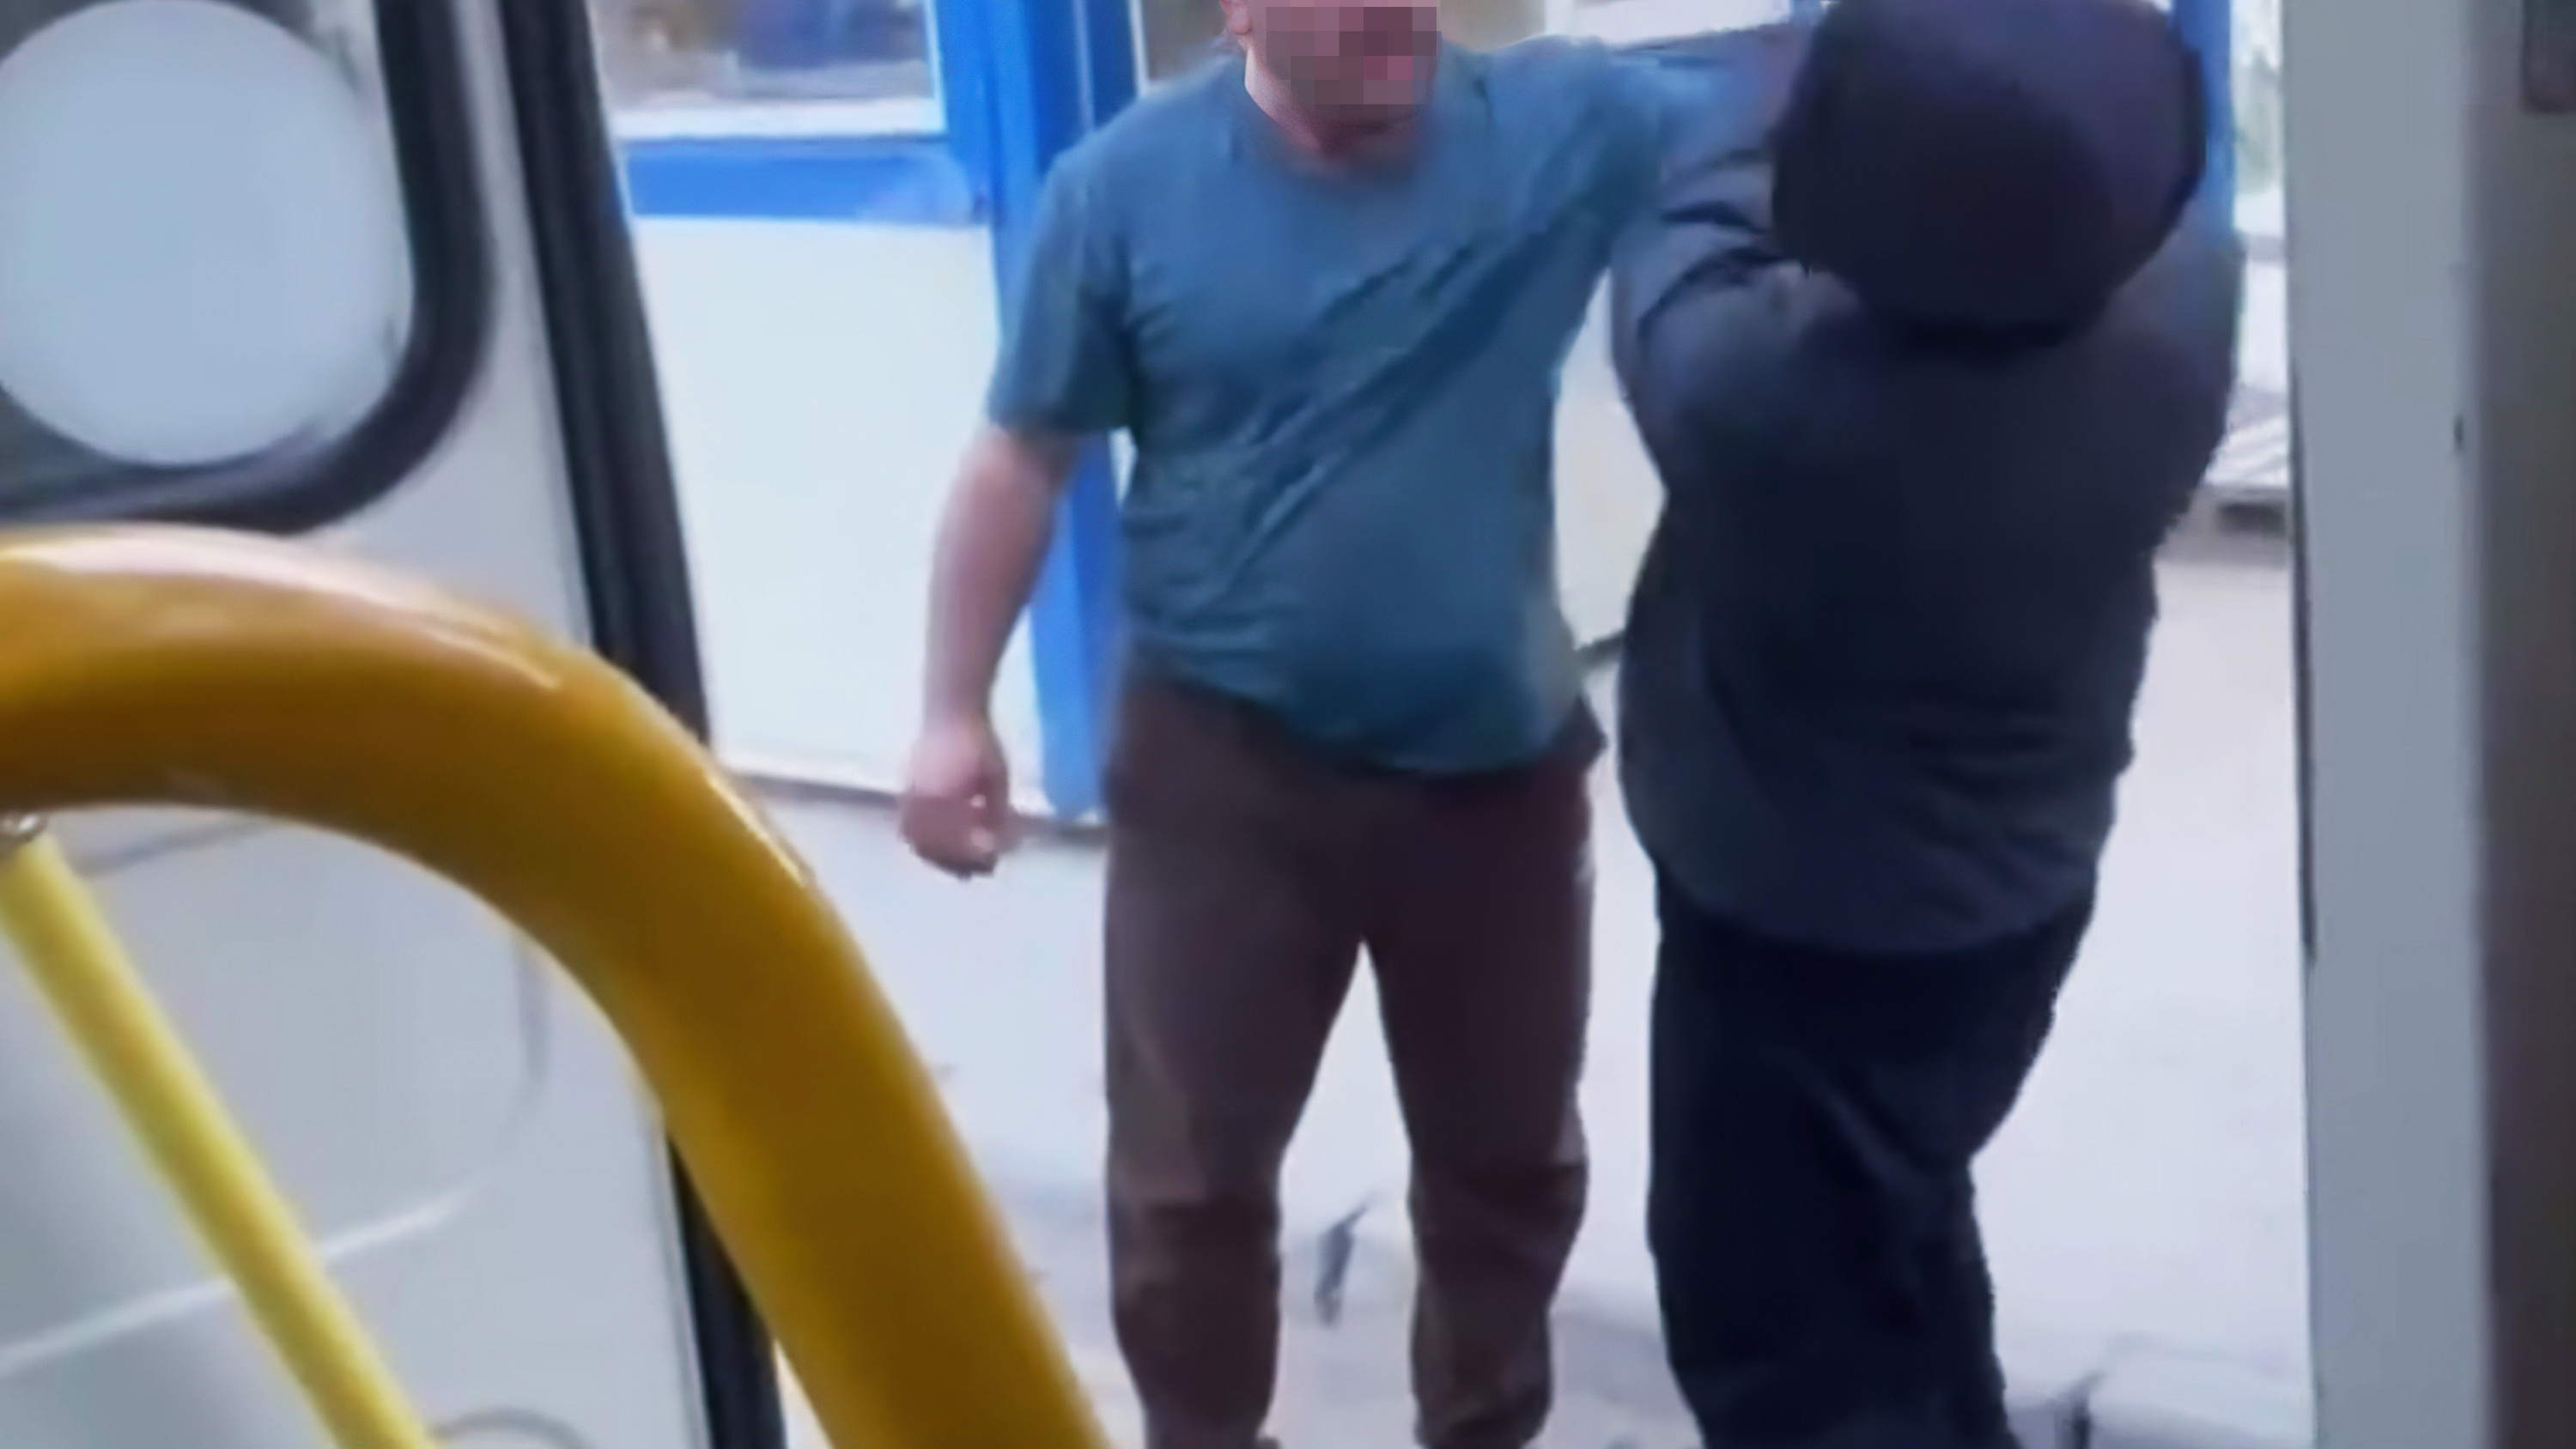 В Якутске водитель автобуса ударил подростка. Что стало причиной конфликта?